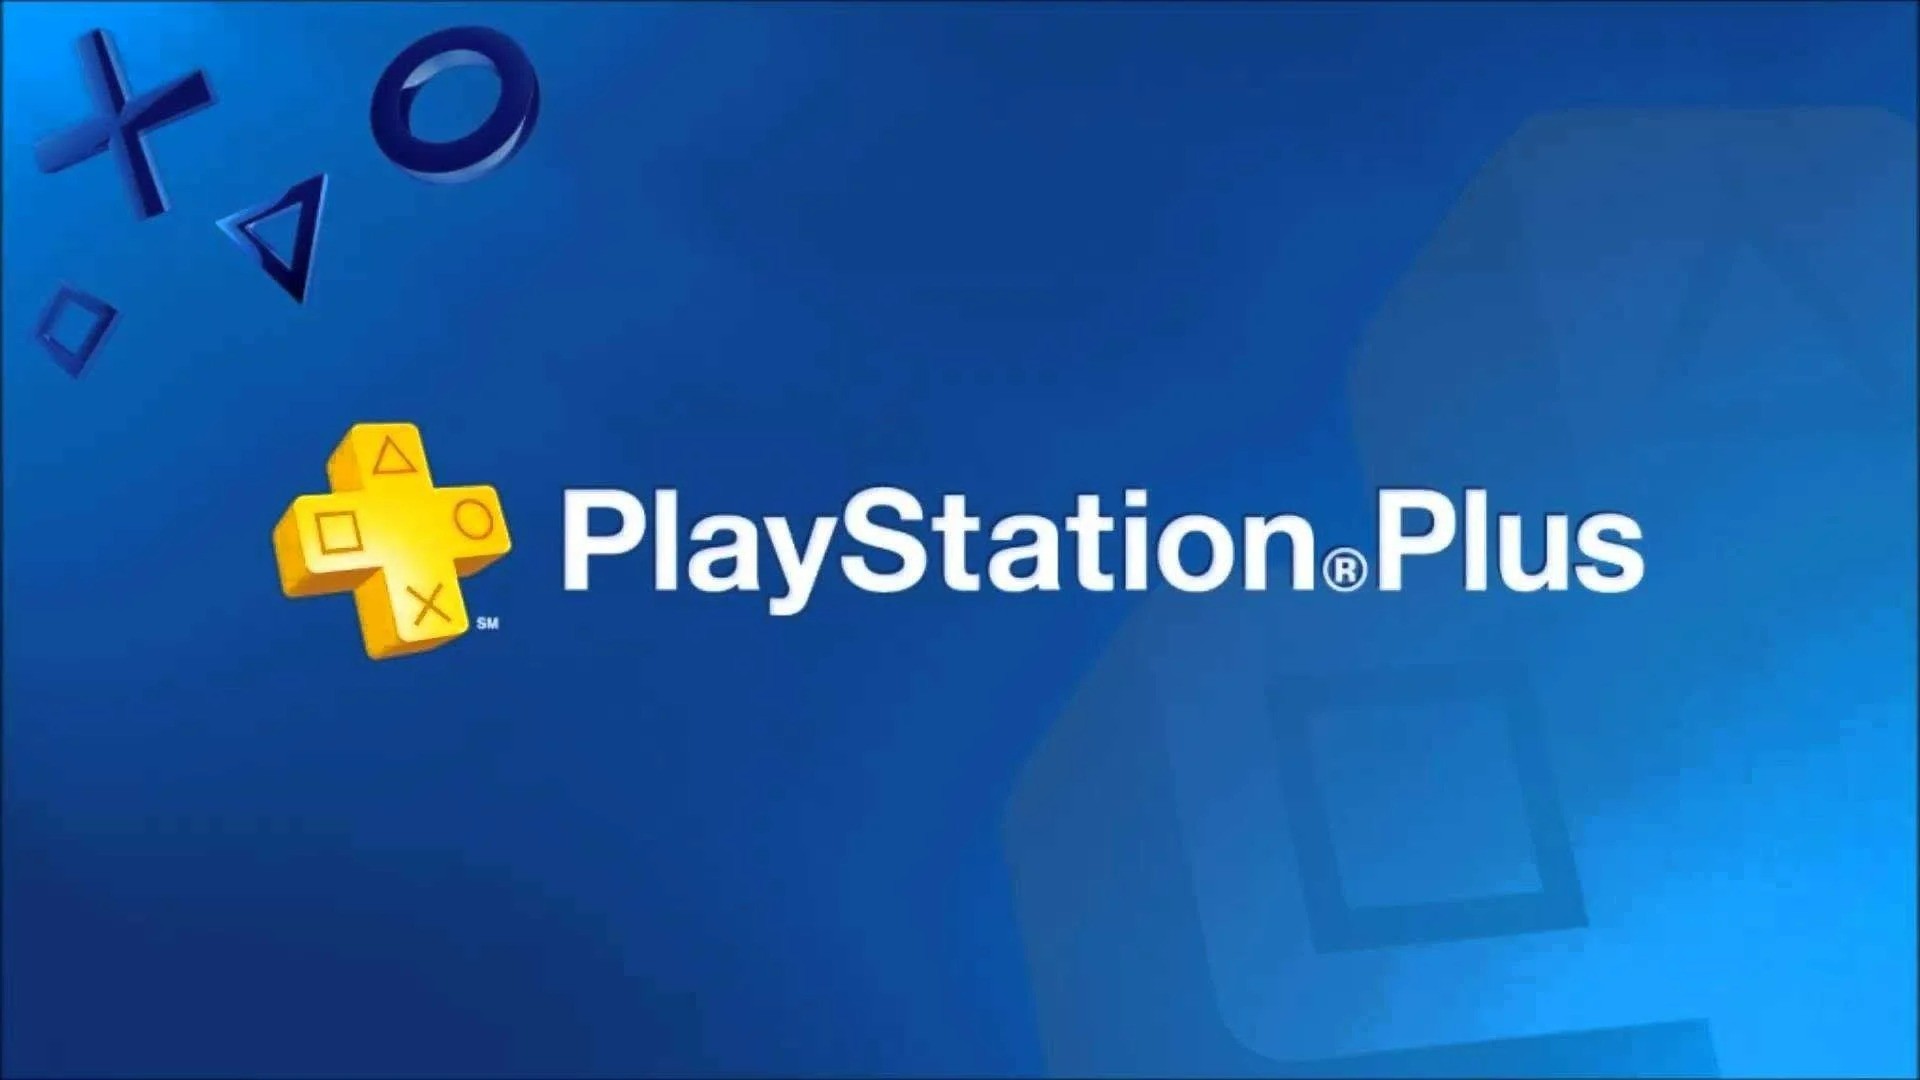 Novo PS Plus: clássicos de PlayStation rodam bem no PS4/PS5